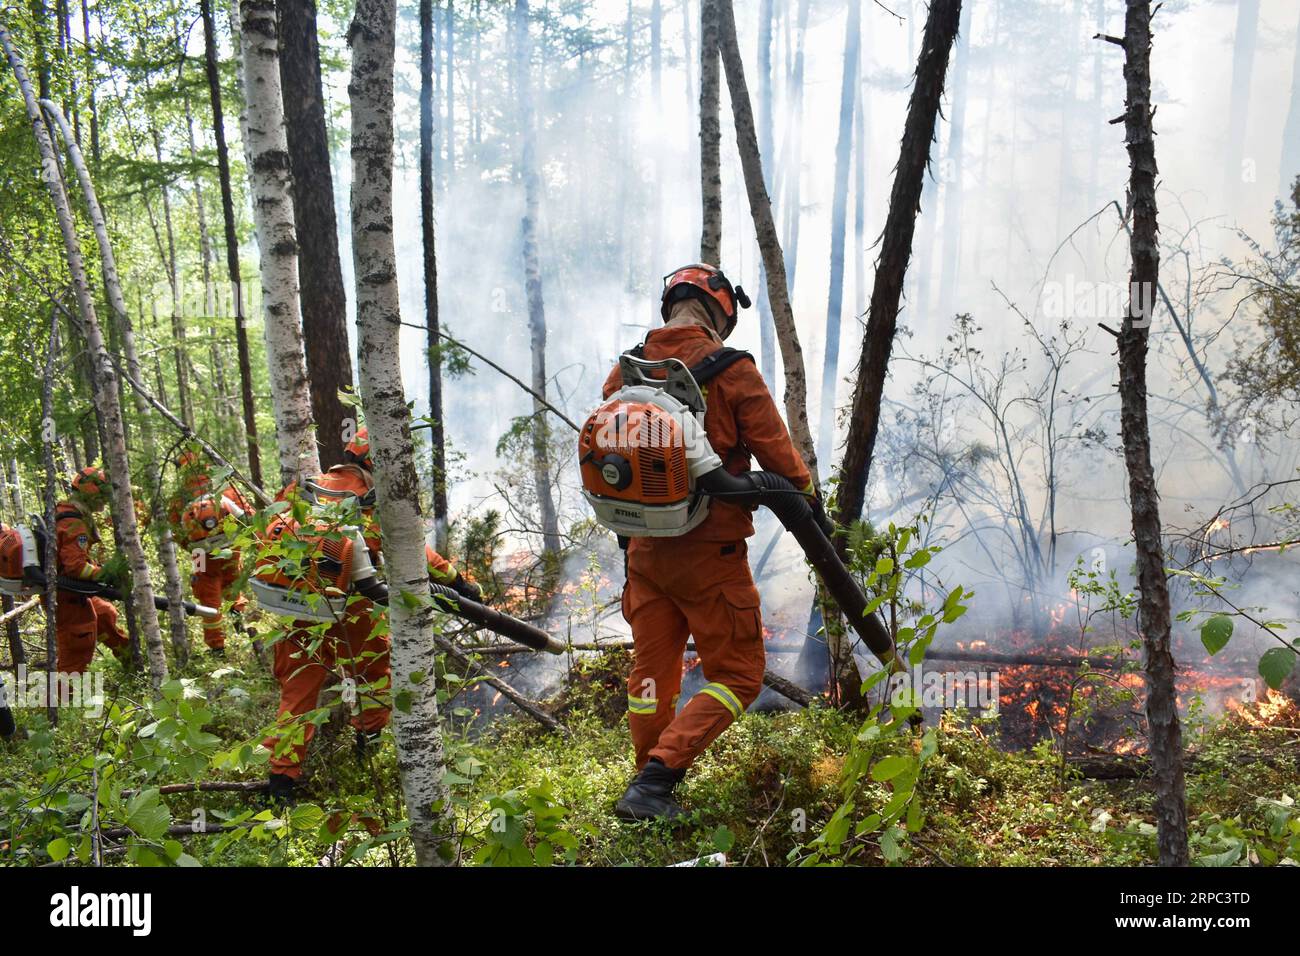 (190622) -- GENHE, 22 juin 2019 (Xinhua) -- des pompiers travaillent à l'extinction d'un incendie de forêt dans la ferme forestière de Xiushan, dans les montagnes du Grand Hinggan, dans la région autonome de Mongolie intérieure du nord de la Chine, 22 juin 2019. Un incendie de forêt qui a fait rage pendant trois jours dans la région autonome de Mongolie intérieure du nord de la Chine a été maîtrisé, ont déclaré samedi les autorités locales. L’opération de nettoyage est en cours à Xiushan, selon le quartier général des pompiers. Après un énorme effort de plus de 5 000 pompiers, le feu a été maîtrisé sur tous les fronts à 4:40 h samedi. (Xinhua/Liu Lei) CHINE-INTÉRIEURE MONGOLI Banque D'Images